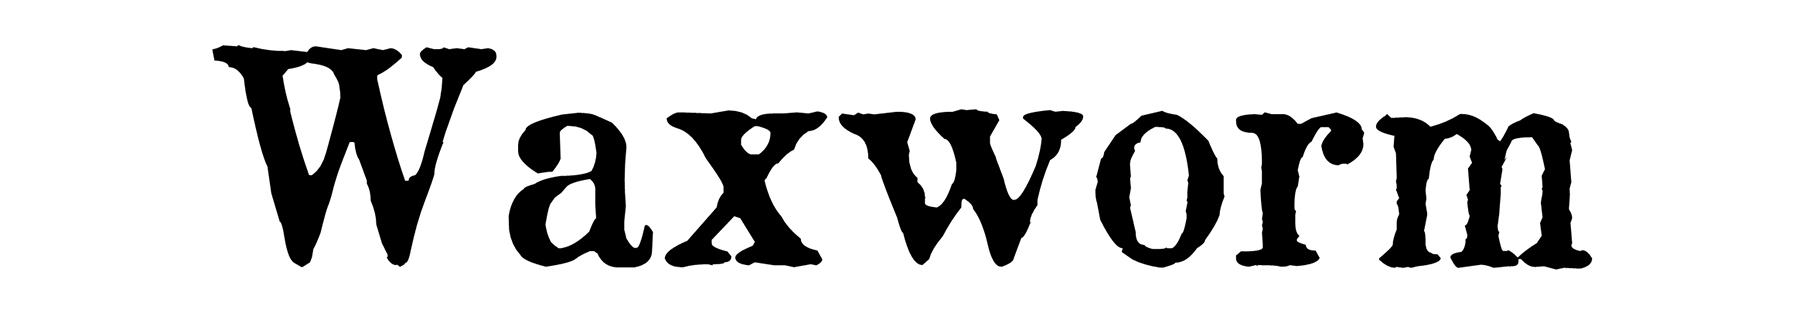 Waxworm